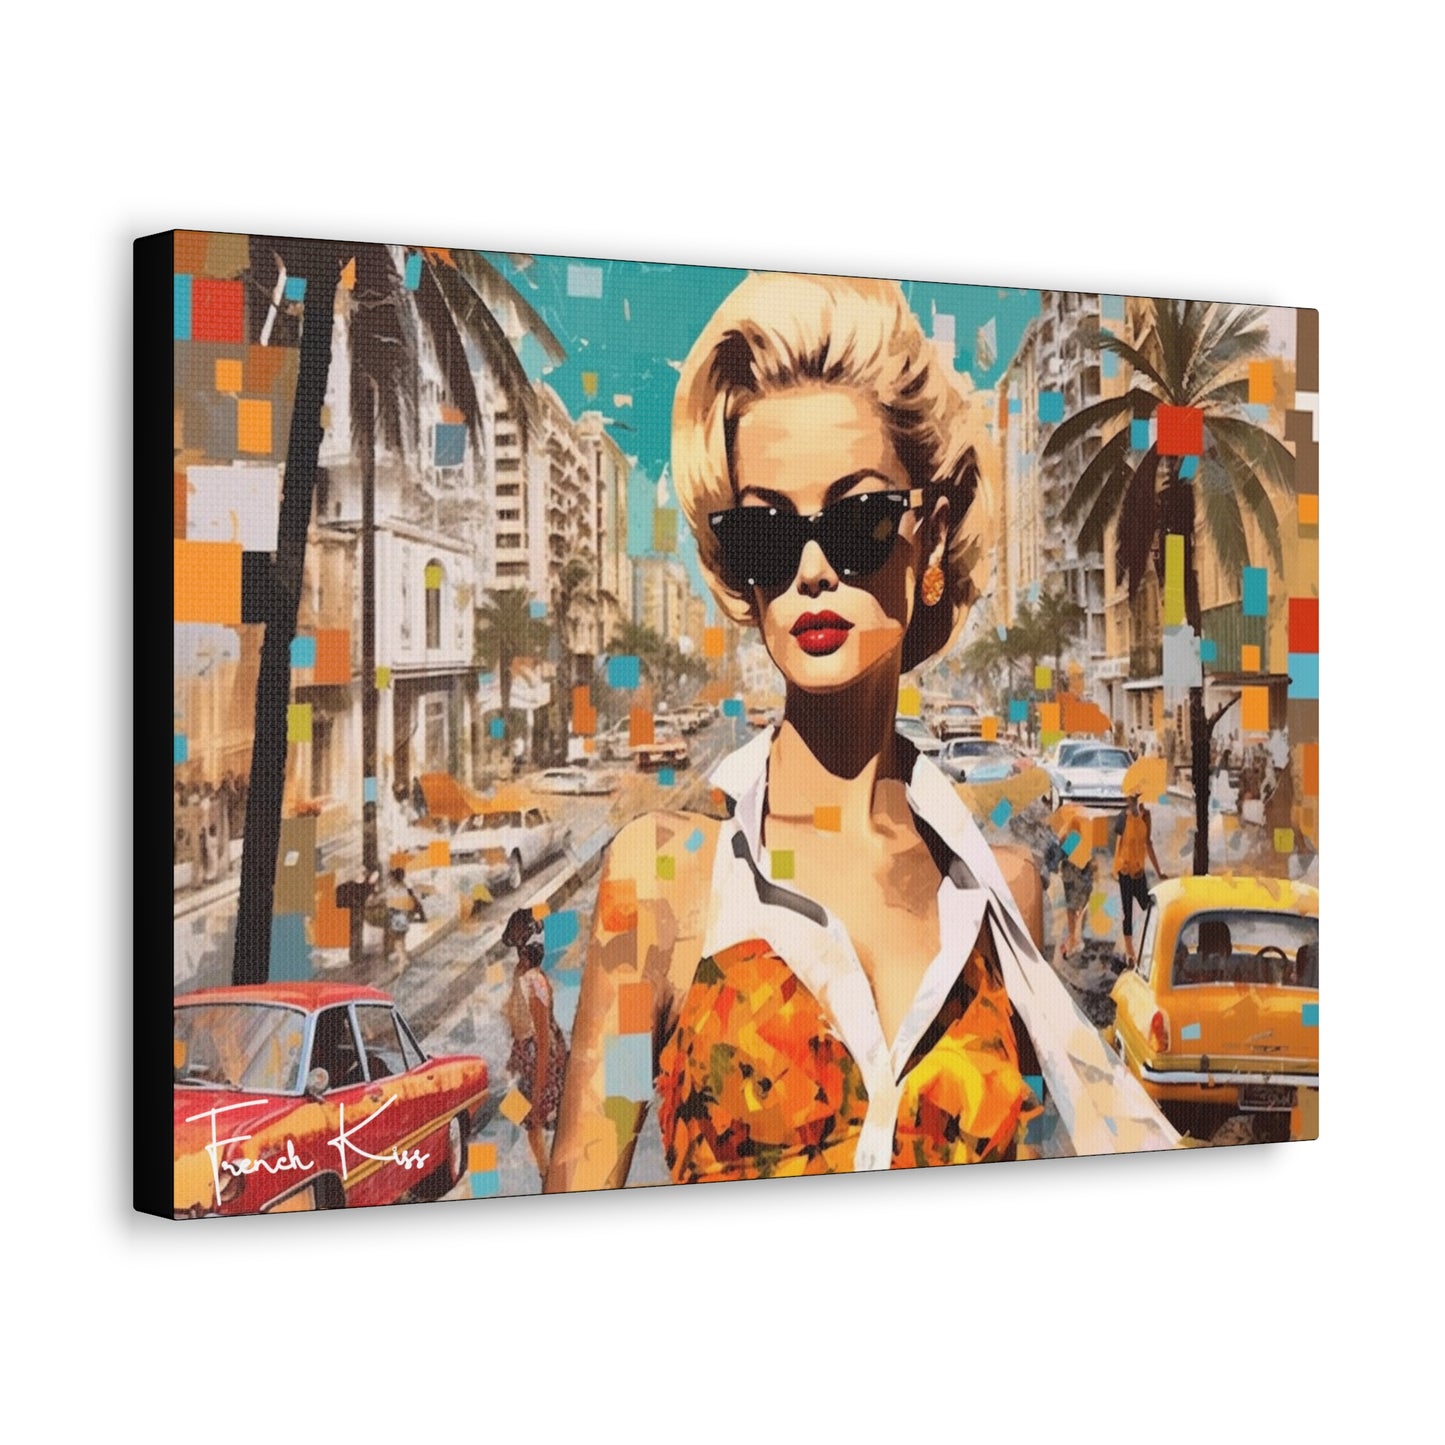 MA JOIE D'ETE French Kiss Pop Art, Gallery, Canvas, Art, Vintage, Retro, St. Tropez, Collection, French Riviera, Travel, Cote d'Azur, Cannes, Pop Art, Decor